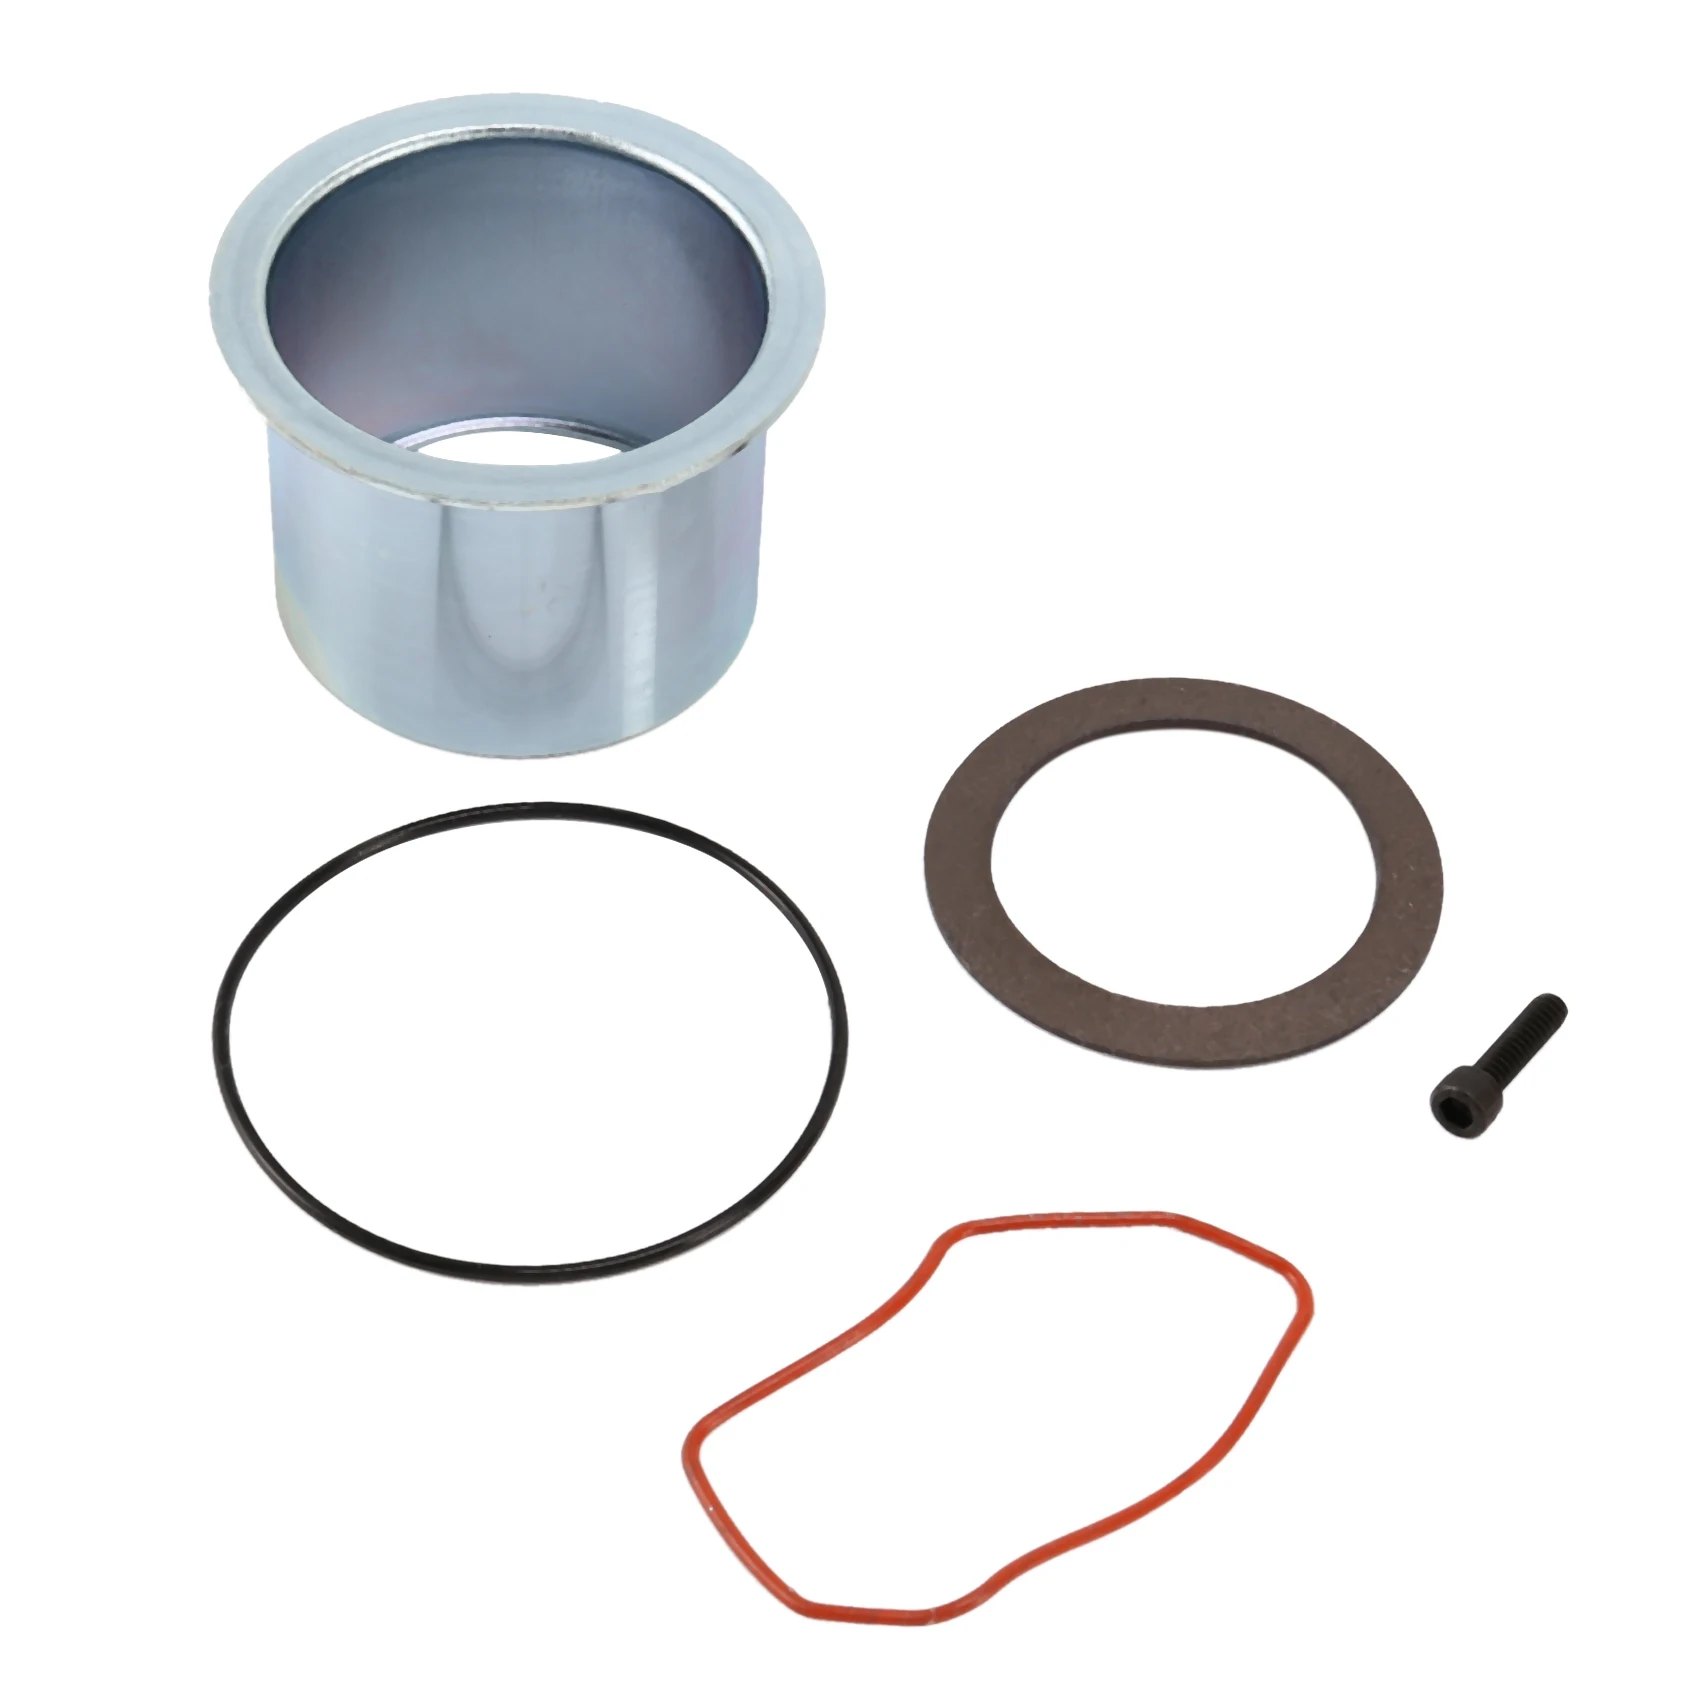 

K-0650 Compression Ring Kit for Craftsman Black and DeVilbiss Porter Cable Compressor